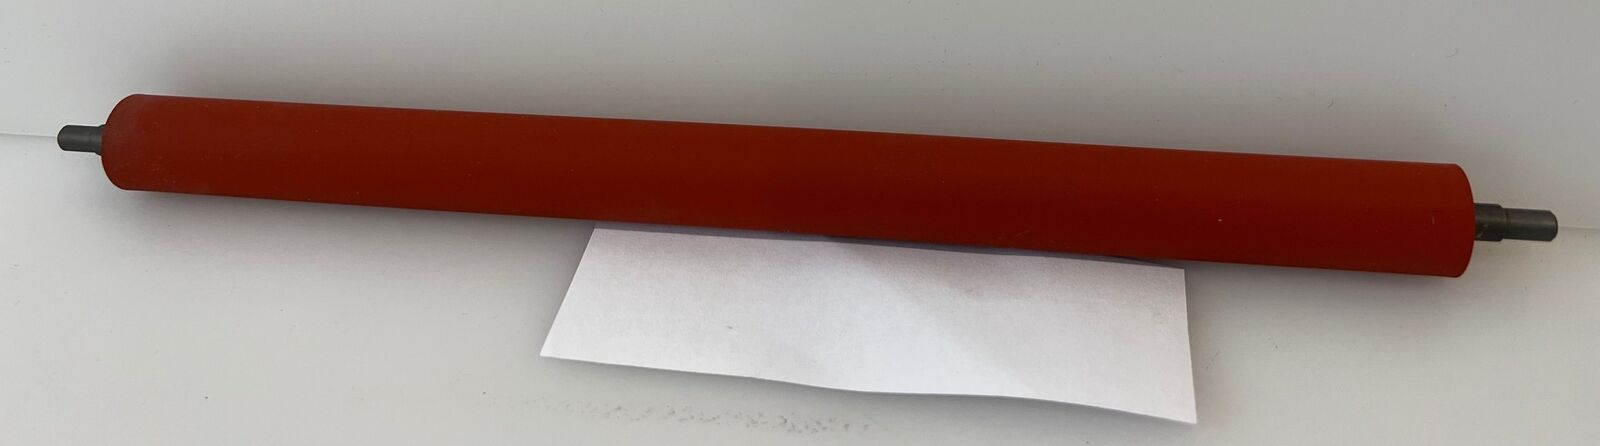 Printer roller length 23.4 cm / height 1.9 cm / holder 1.5 cm